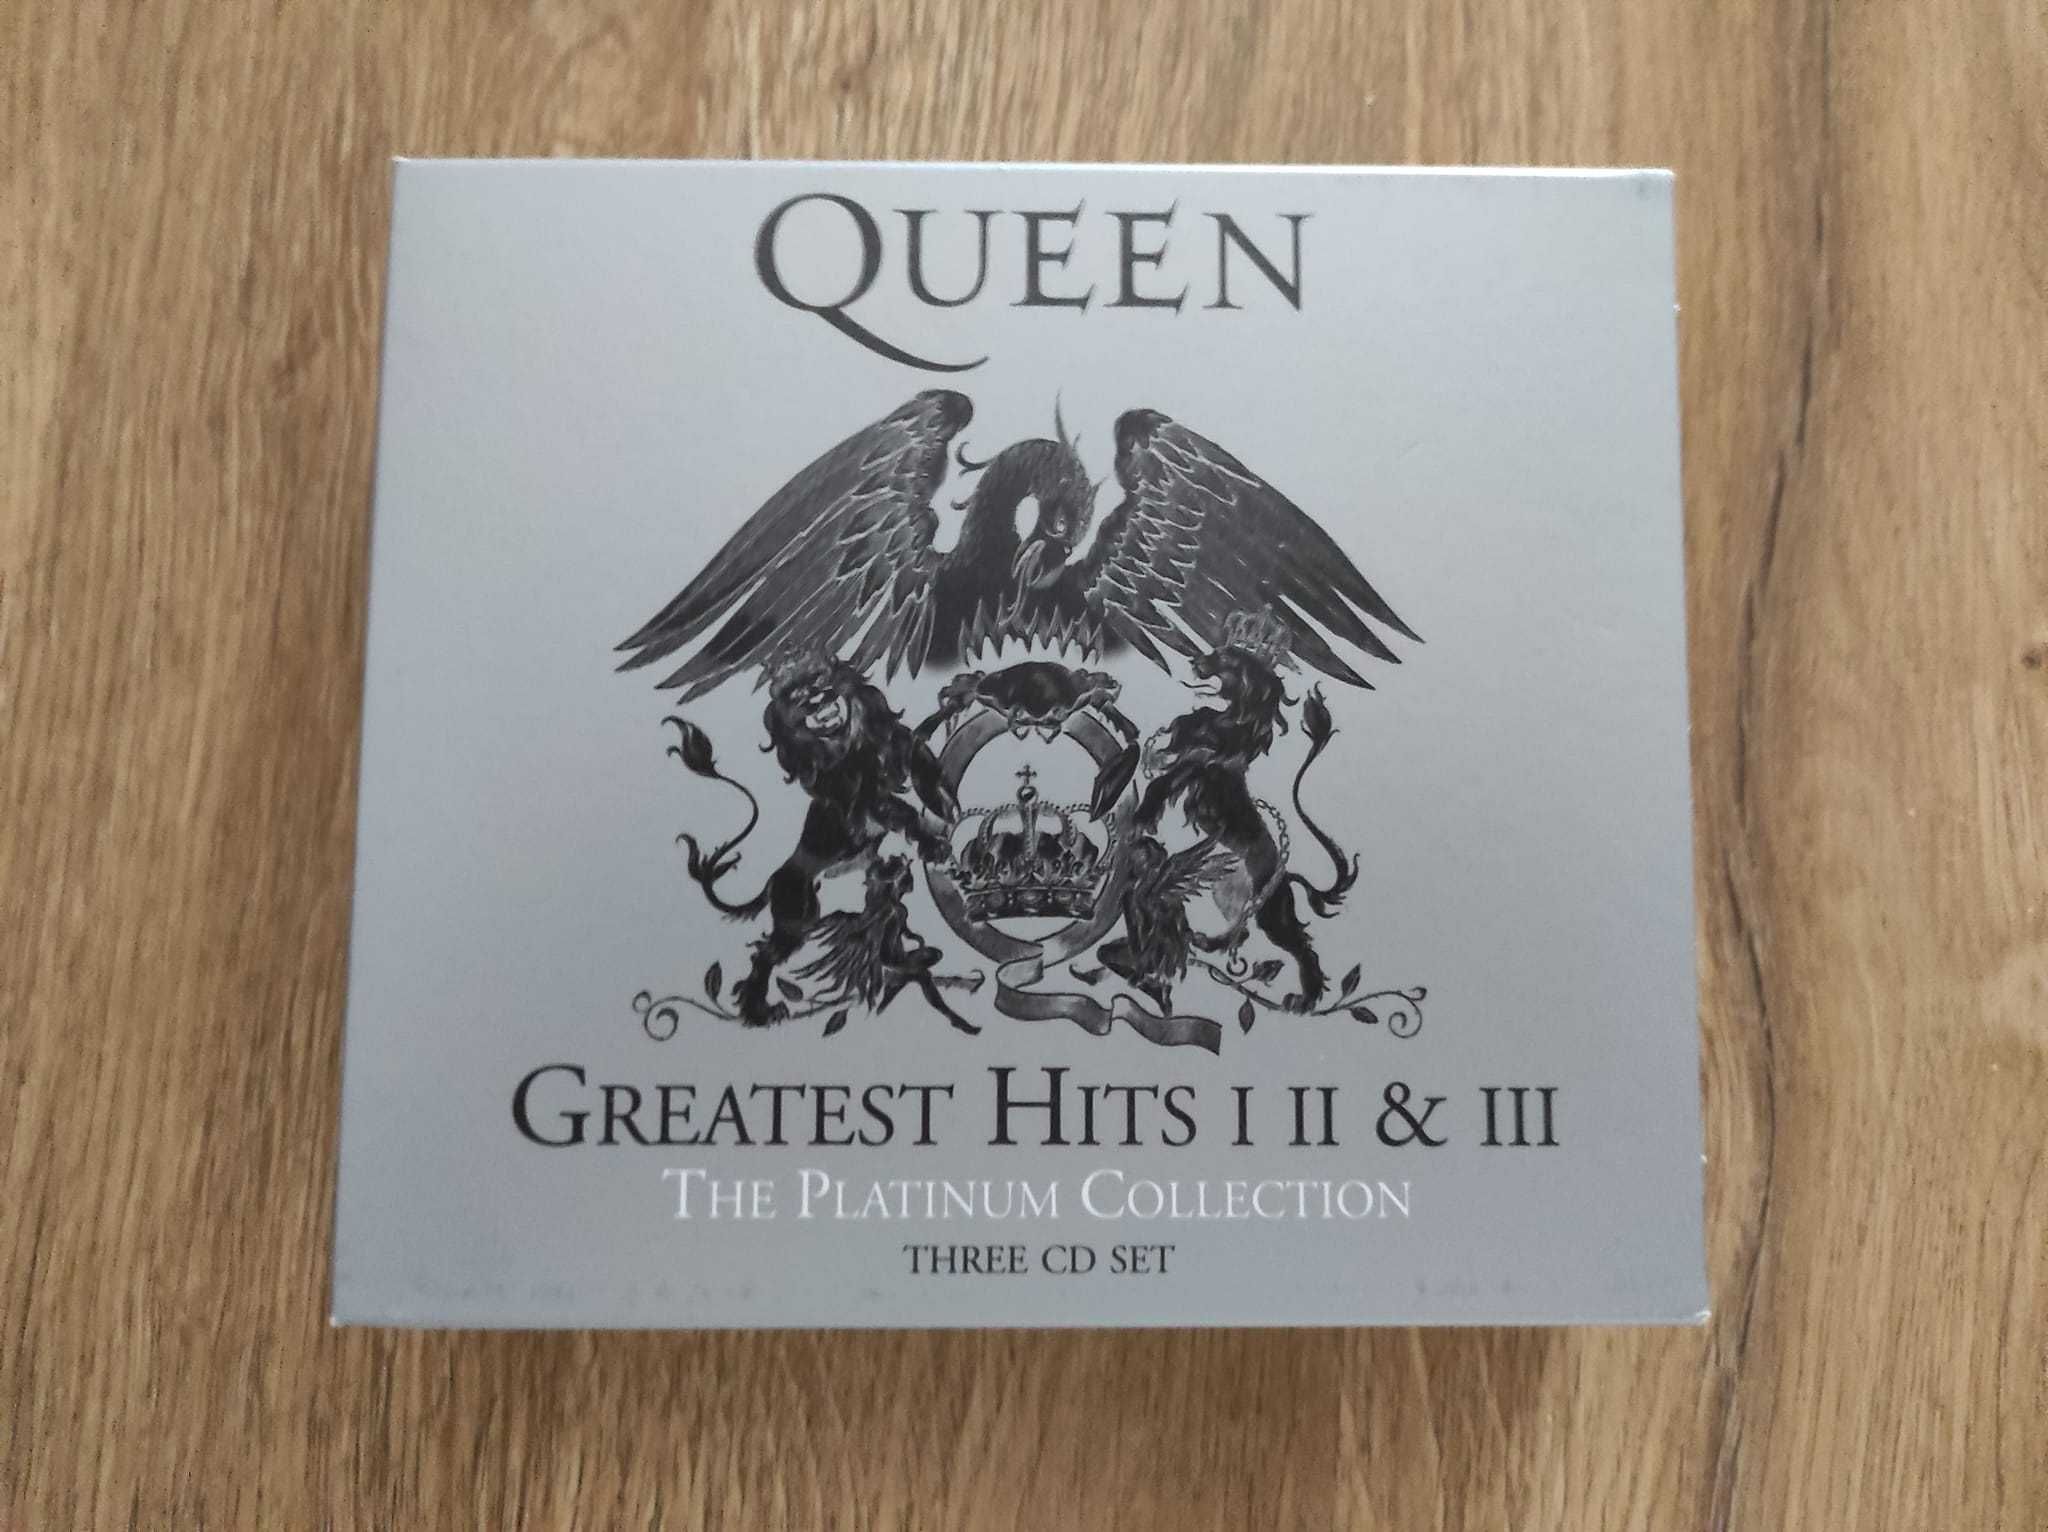 Płyty Queen - Greatest hitts I, II & III